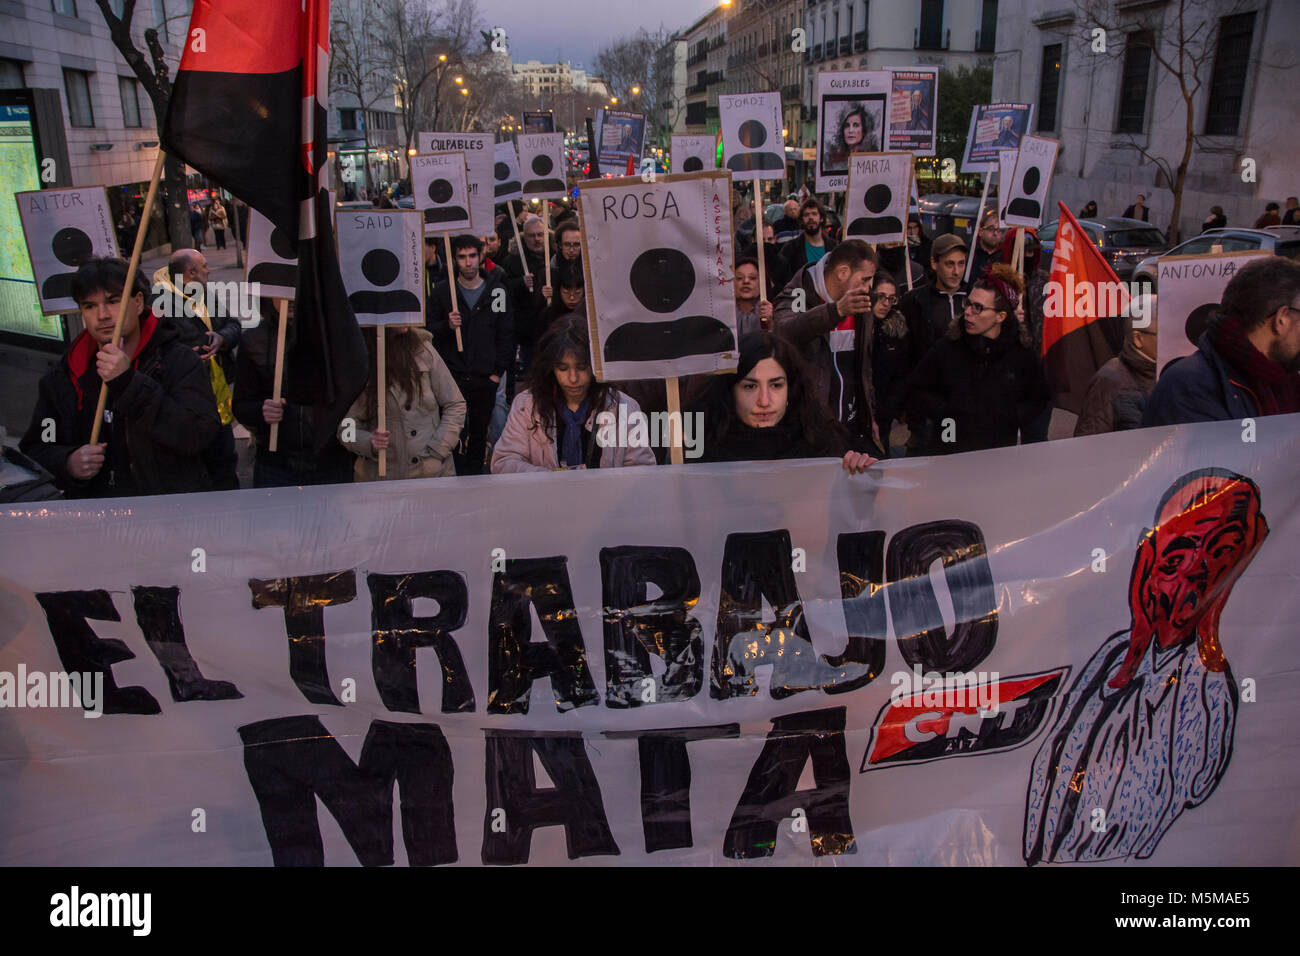 Madrid, Espagne. 24 février 2018 l'union nationale du travail. des travailleurs, démontre contre de gouvernement en faveur des travailleurs de l'homme, autour de 600 100 travailleurs en 2017 mourir dans de mauvaises conditions de travail Crédit : Alberto Ramírez Sibaja/Alamy Live News Banque D'Images